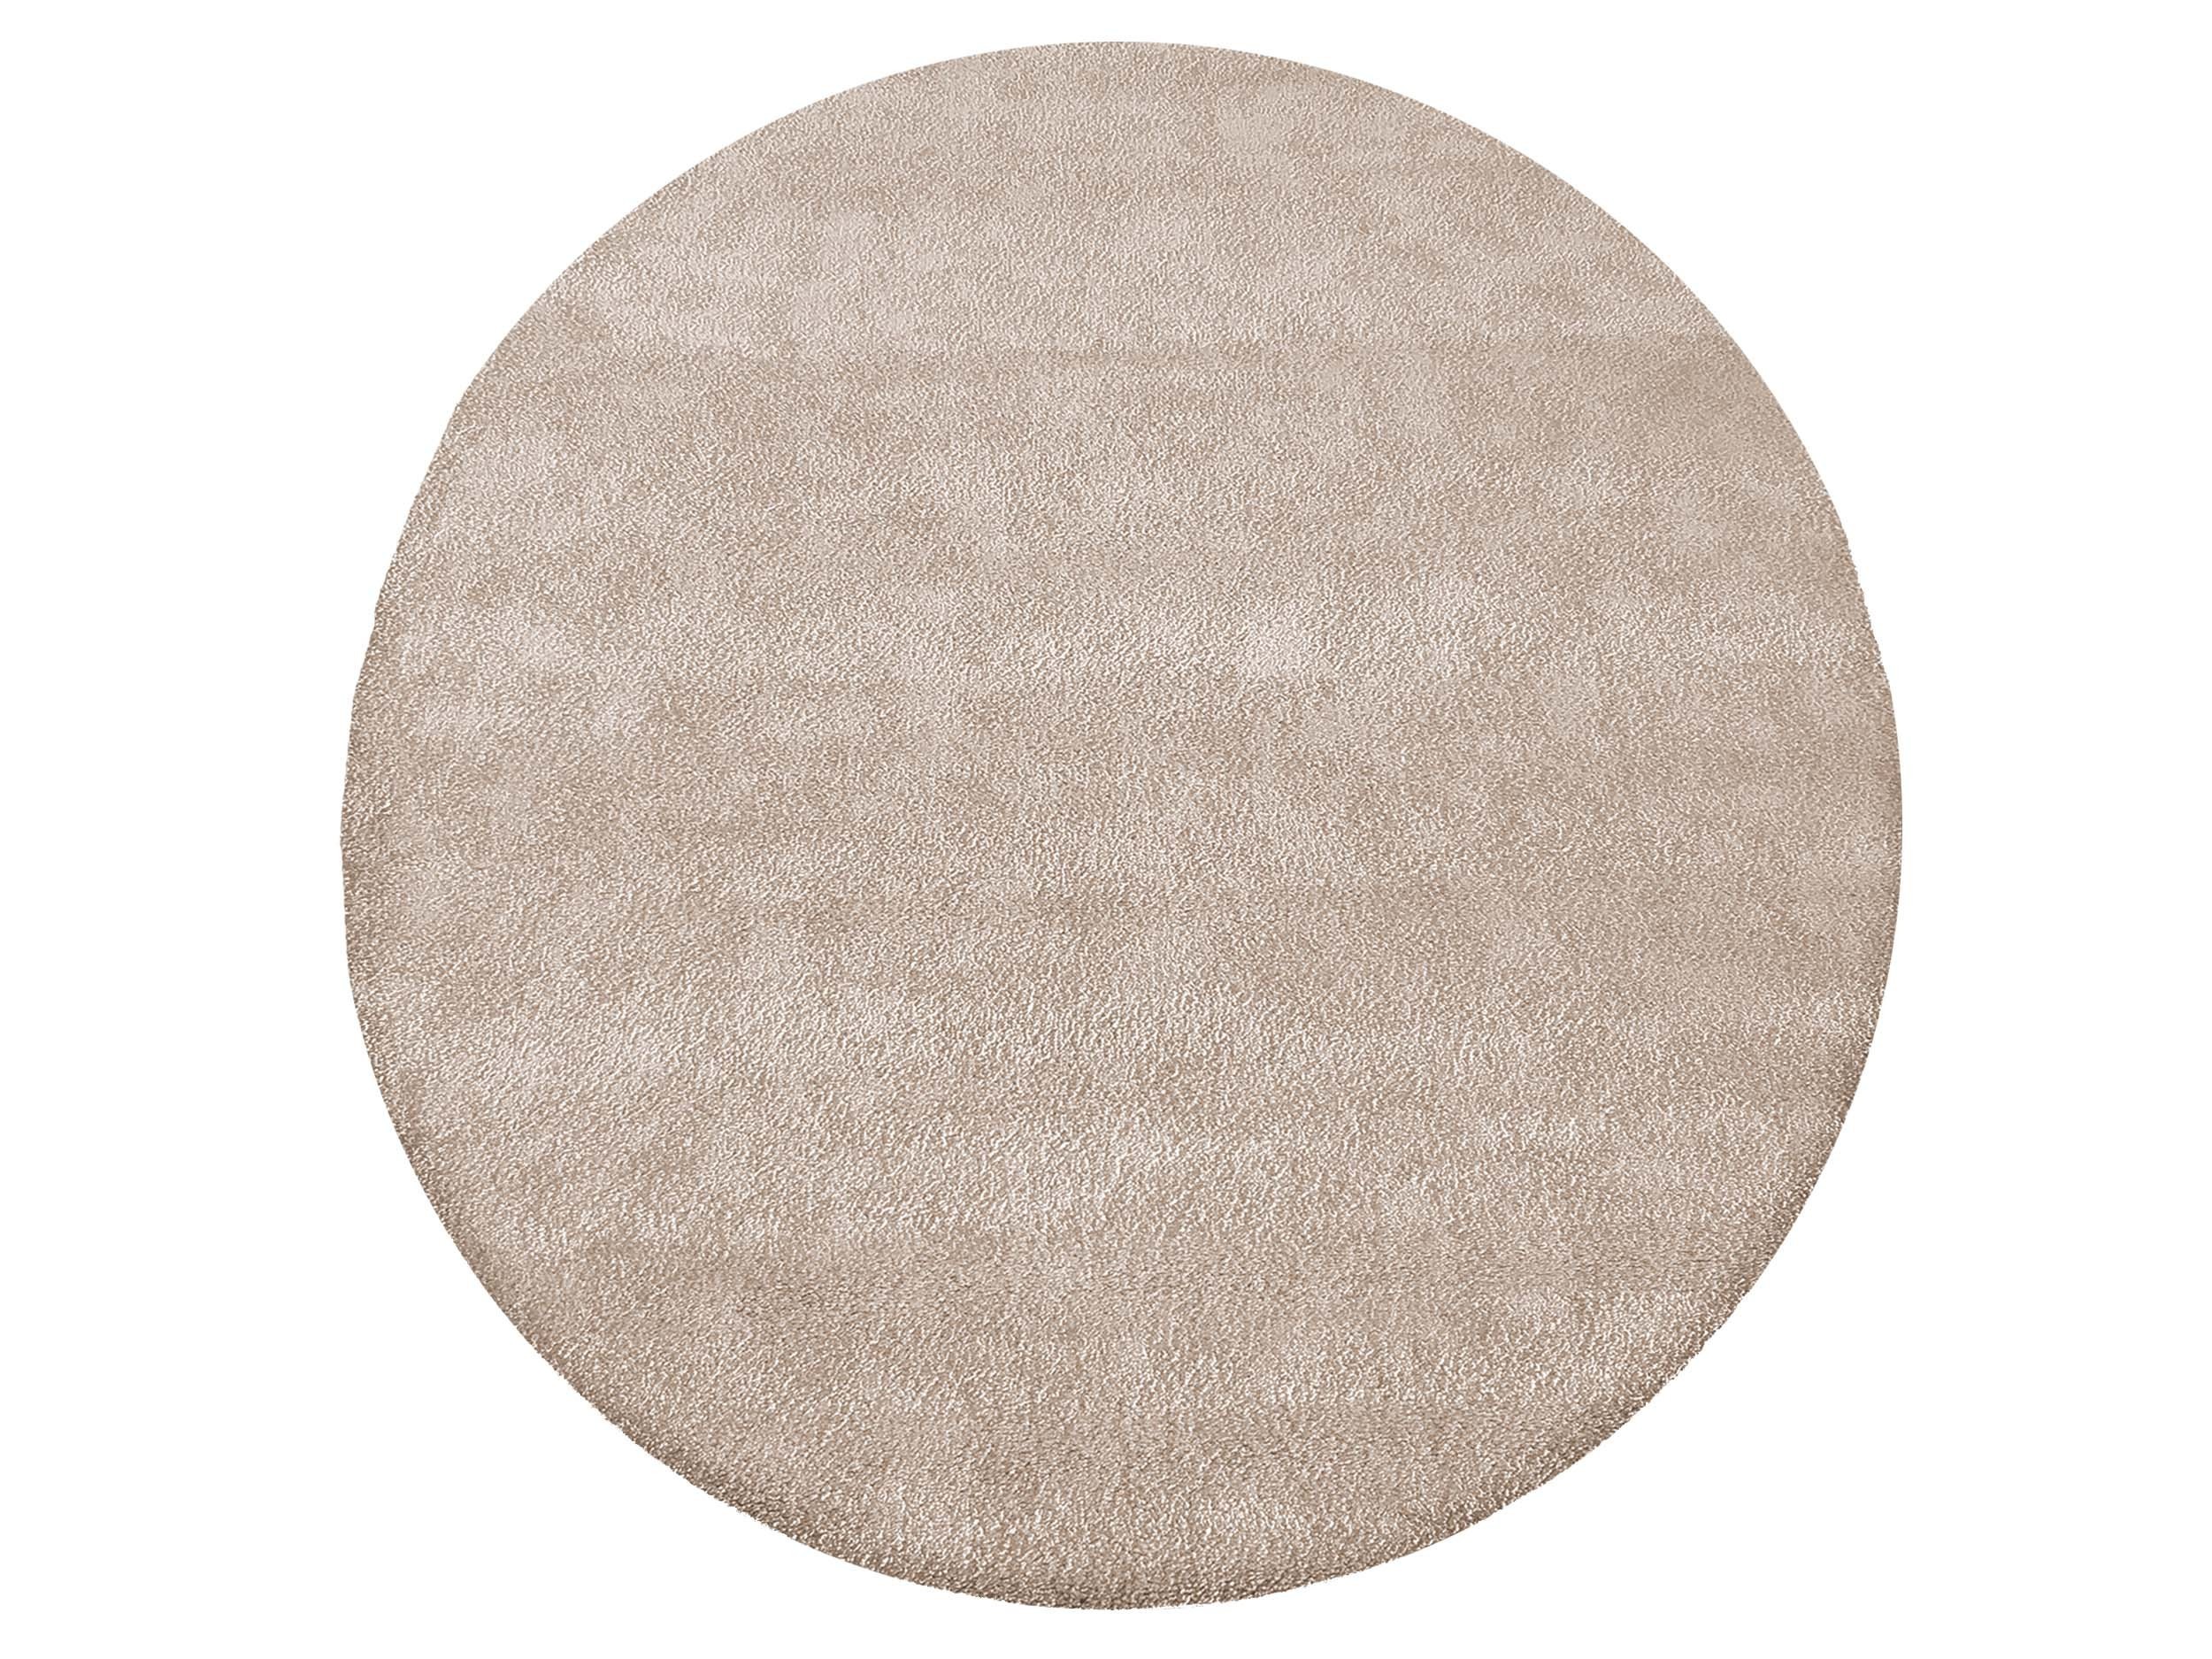 Moderní kulatý koberec v béžové barvě